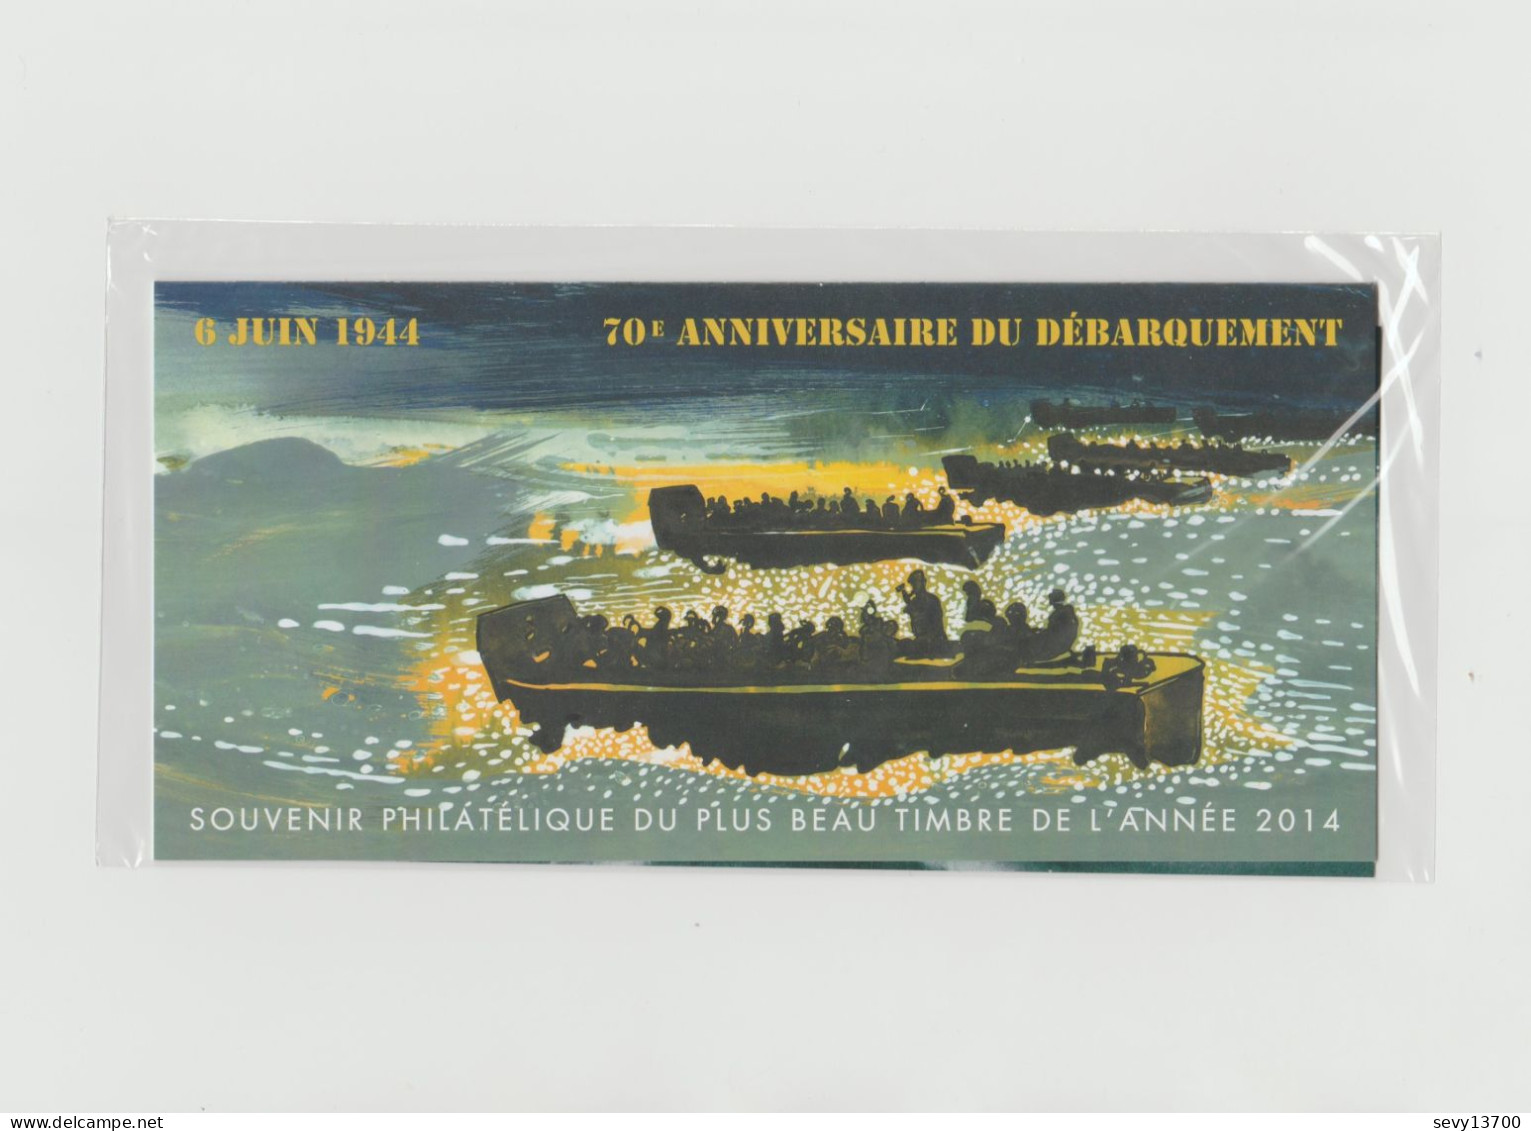 France 2015 - Bloc Souvenir Philatélique - 6 Juin 1944 70ème Anniversaire Du Débarquement N° 114 - Neuf Sous Blister - Foglietti Commemorativi